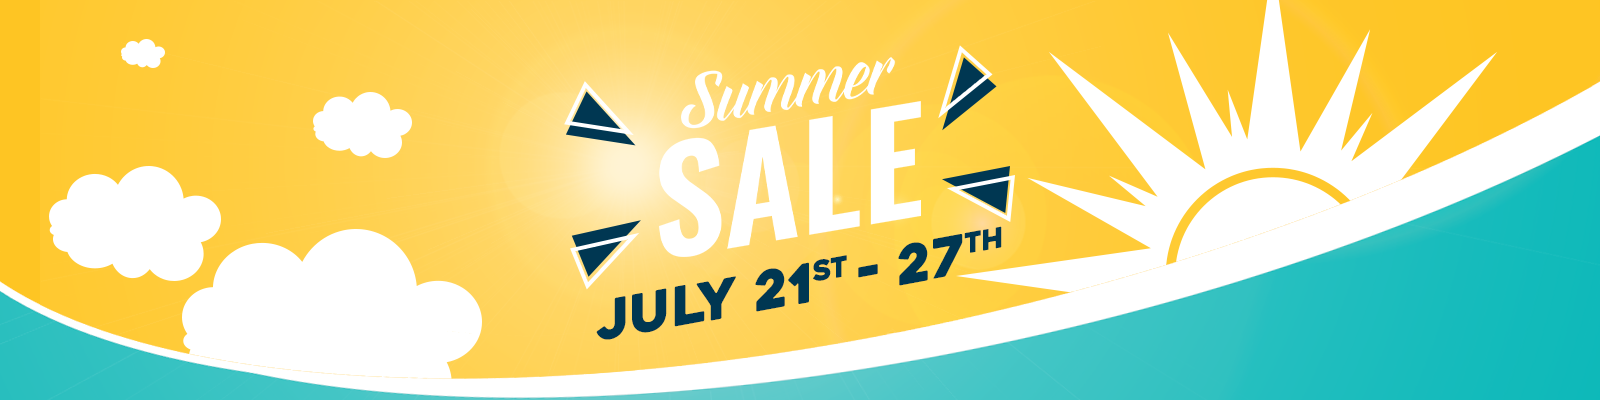 Summer Sale header image